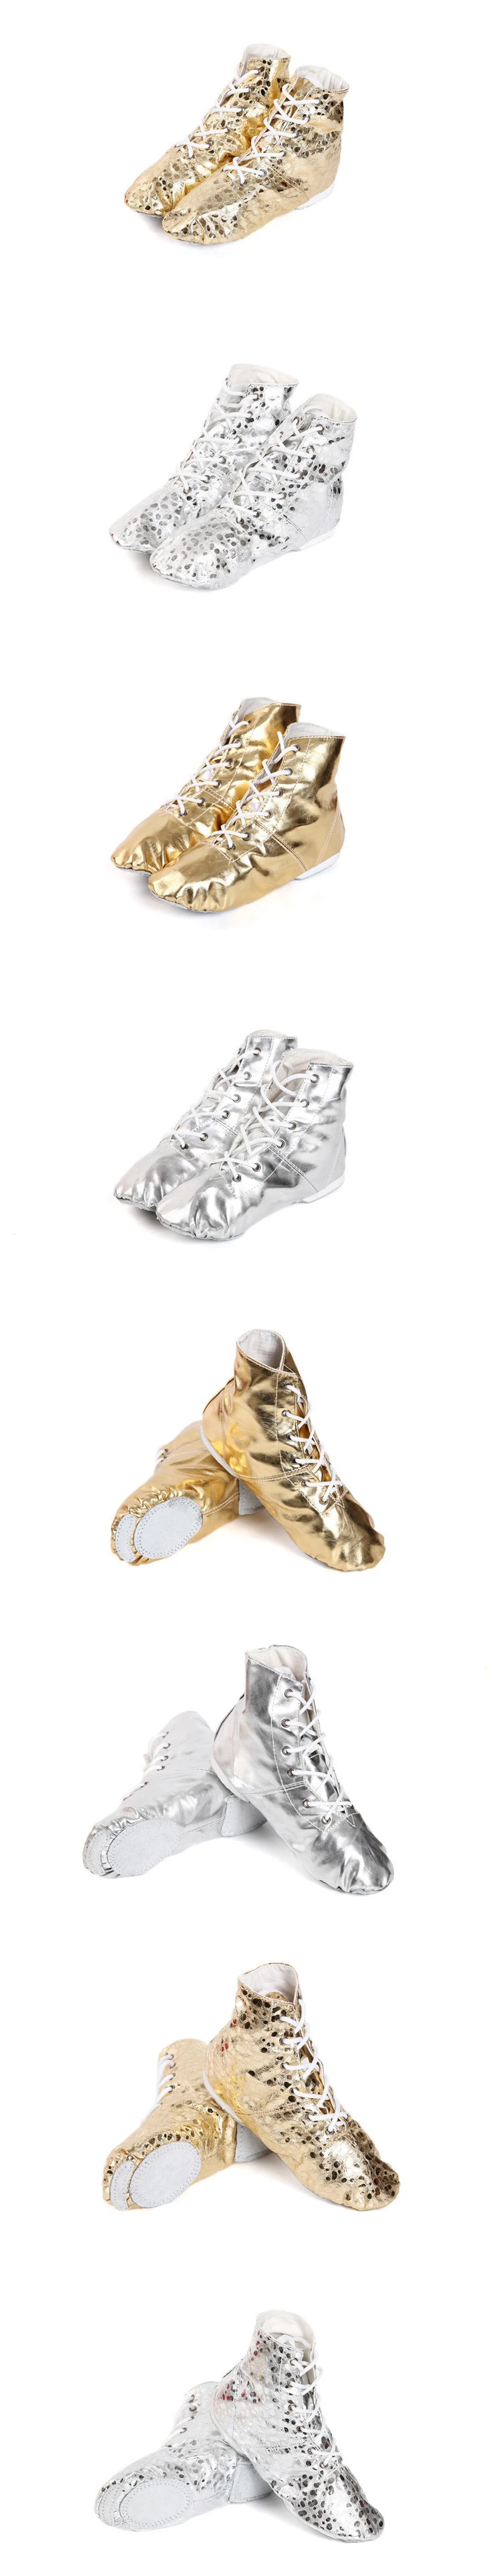 Женские танцевальные ботинки для танца живота, золотой и серебряный цвета, танцевальная обувь для джаза, мягкие танцевальные ботинки с